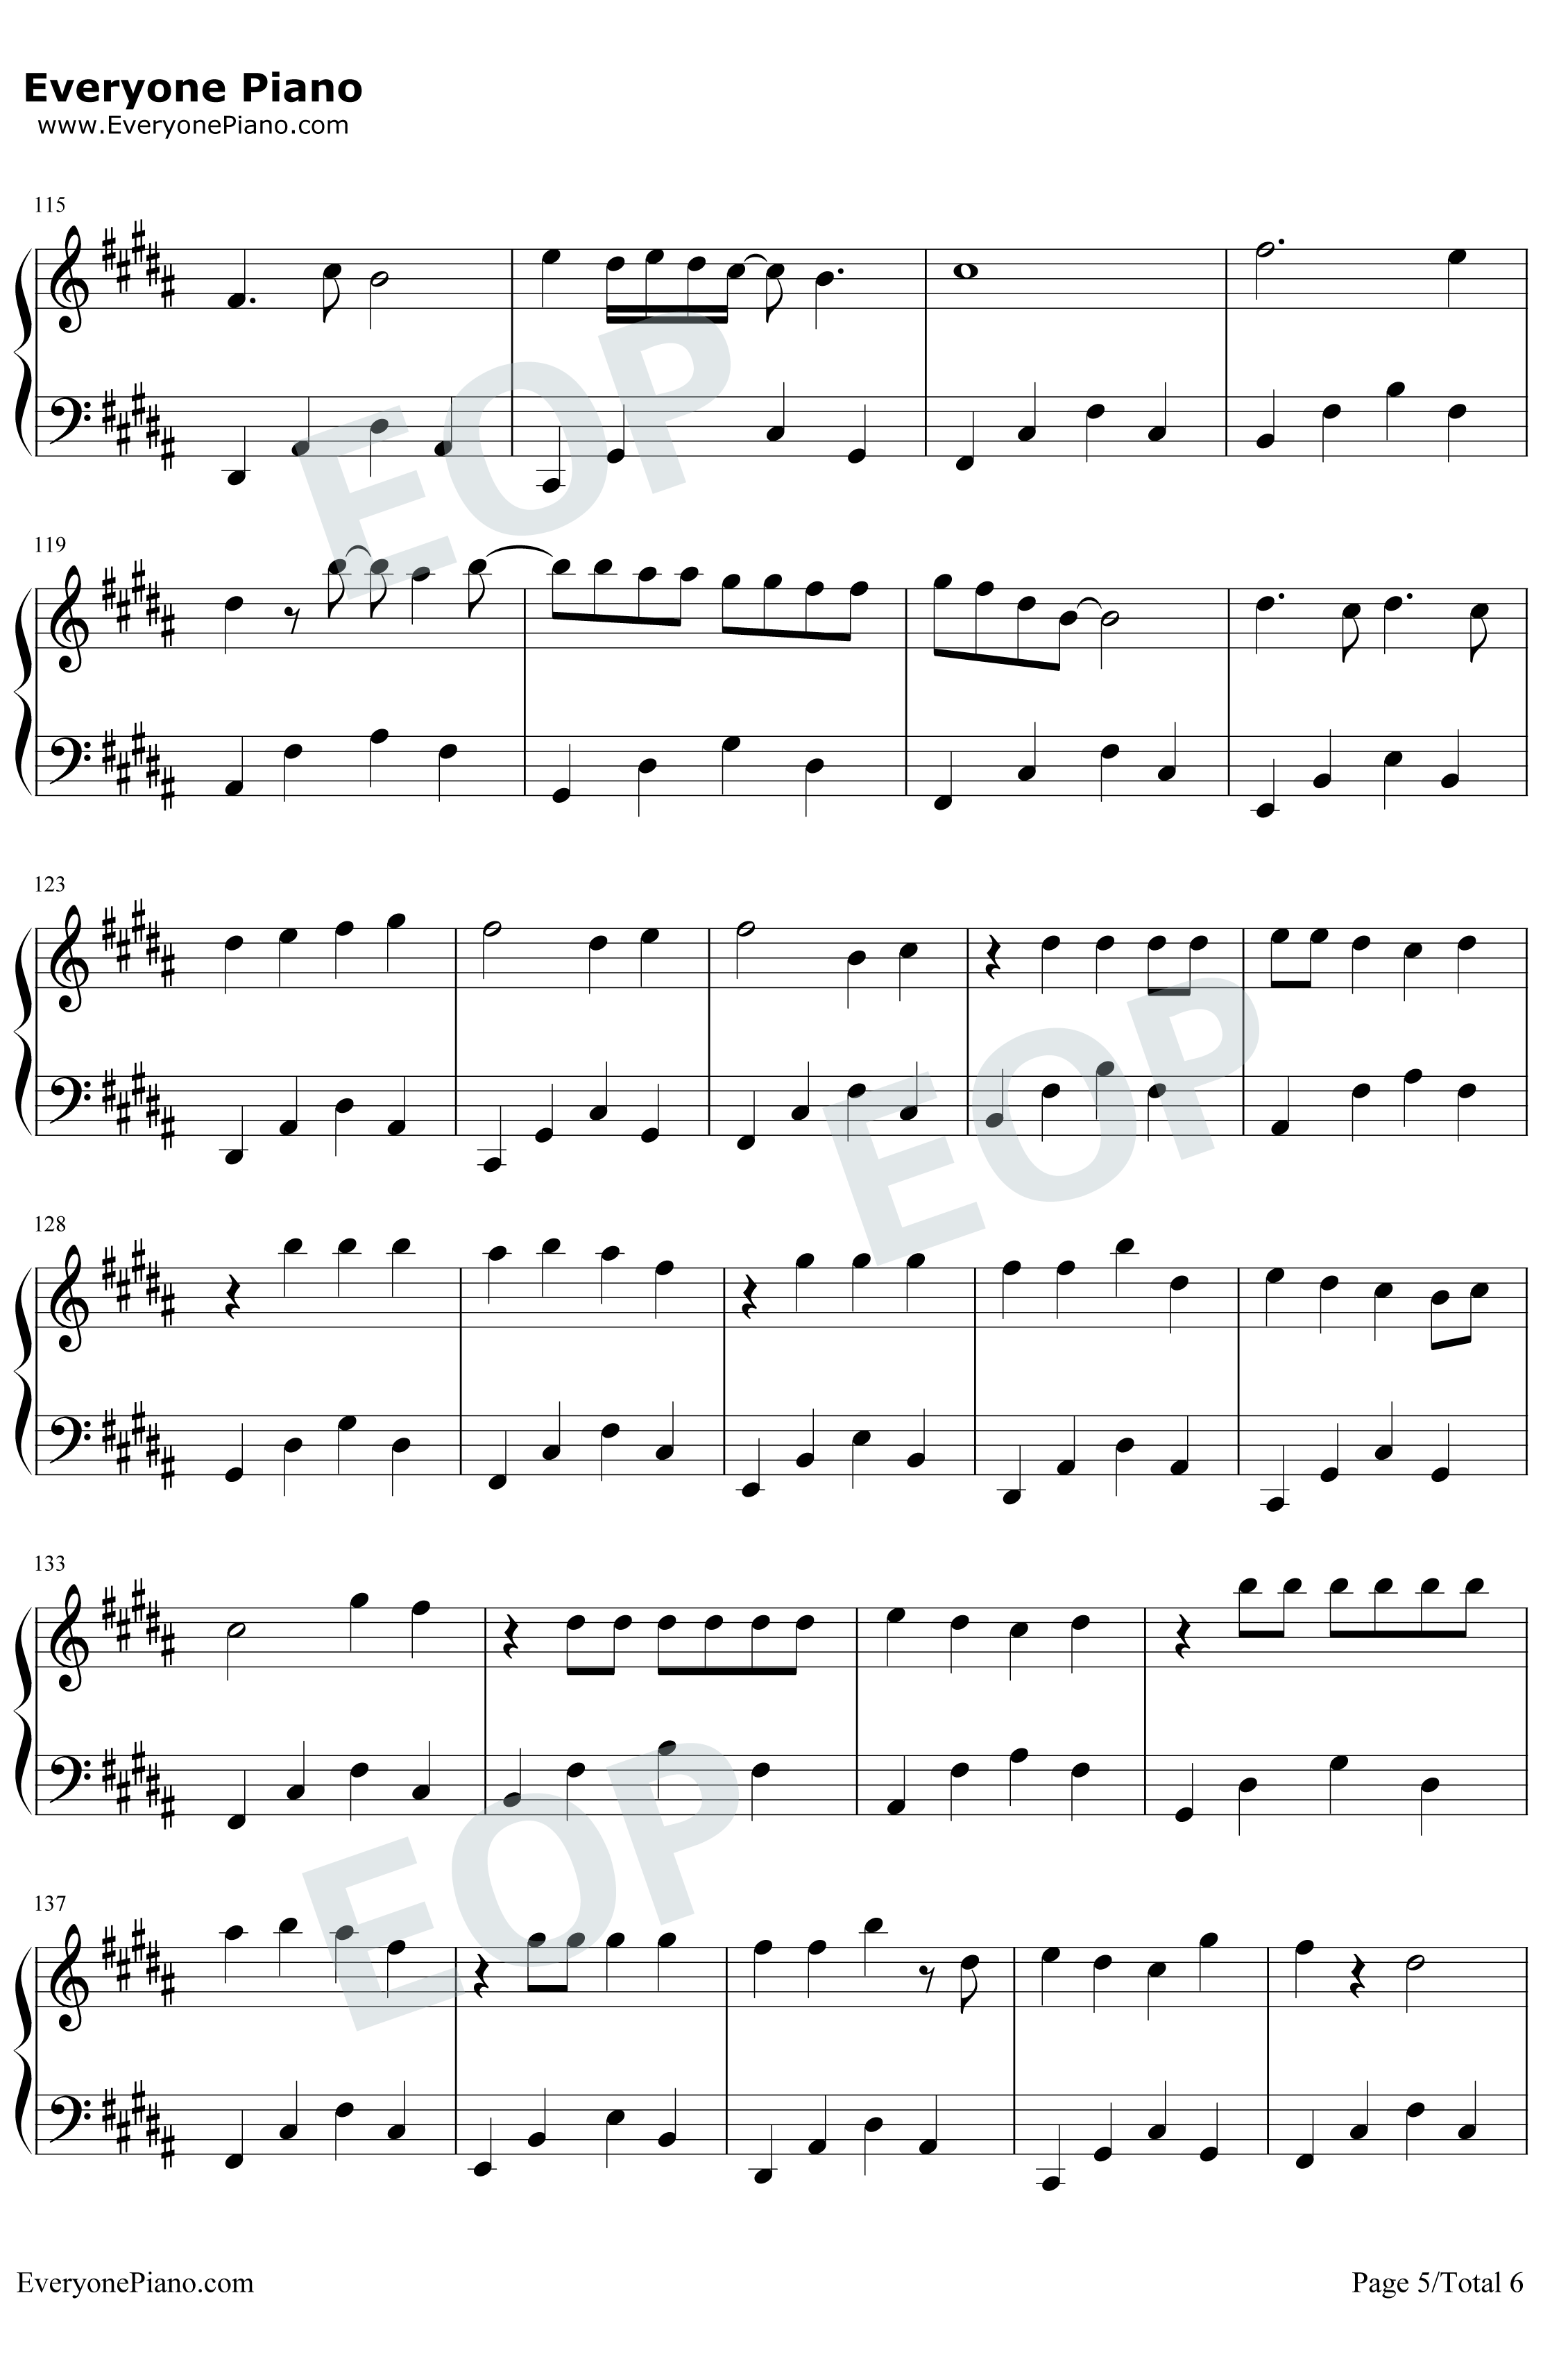 ジコチュー乃版本46钢琴谱-乃木坂465